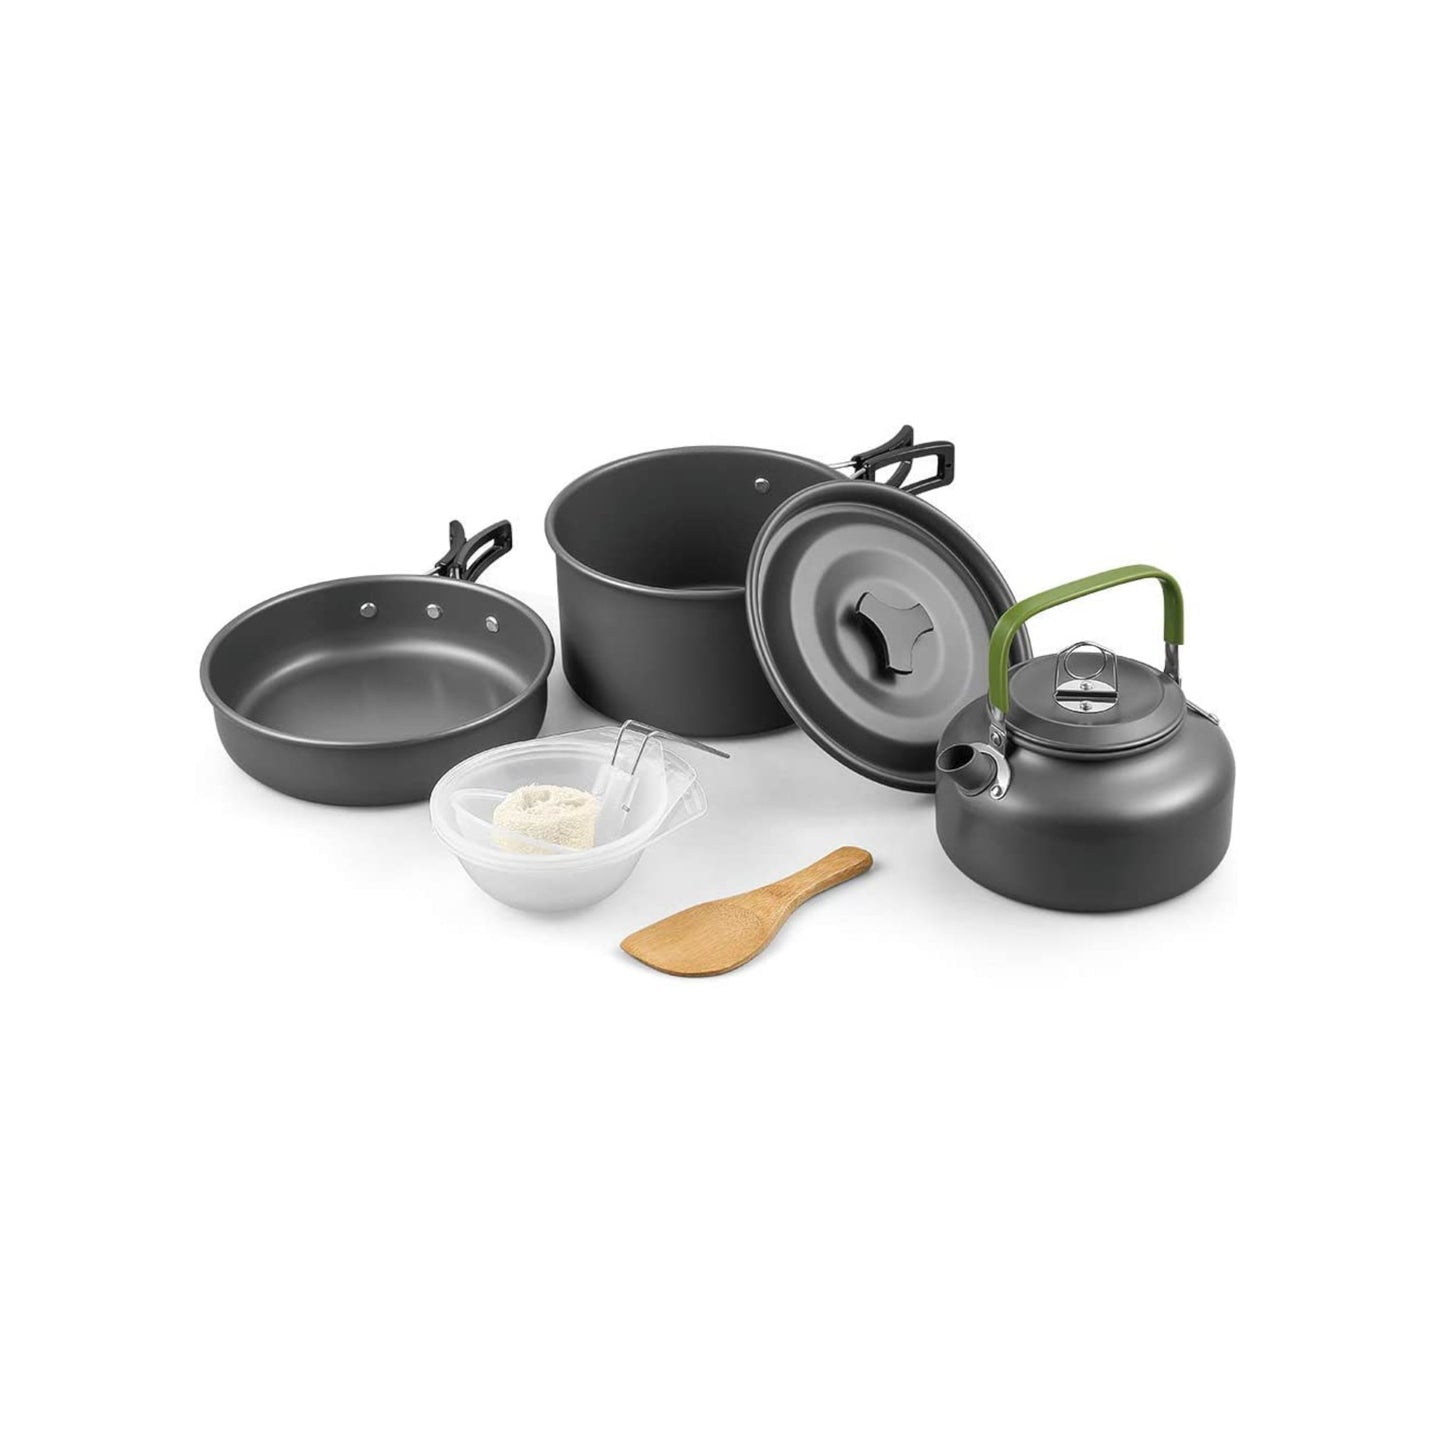 Premium cooking set - pot, pan, bowls, spoons - 7 pieces